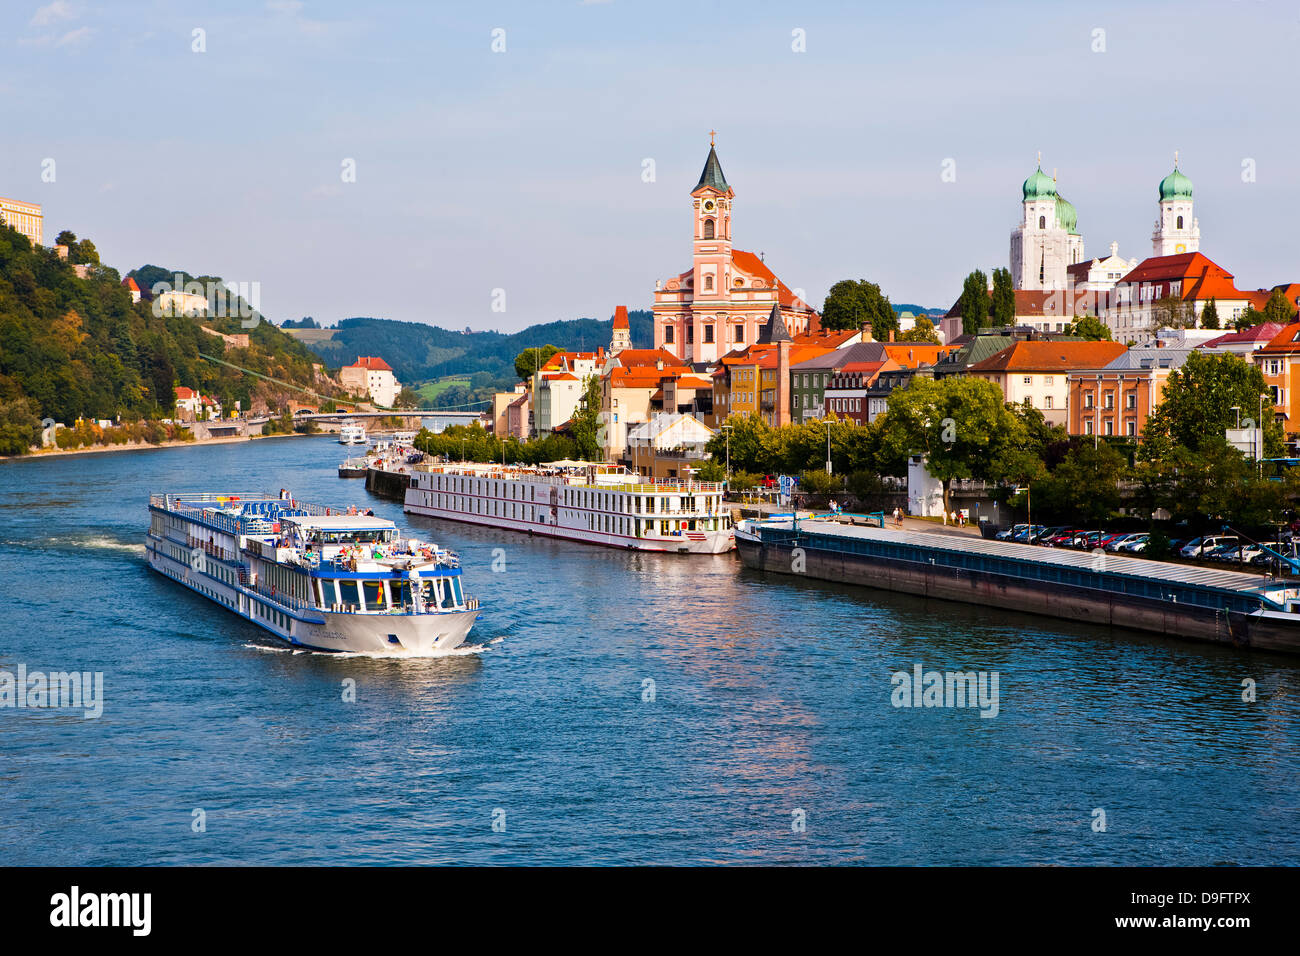 Crucero pasando por el río Danubio, Passau, Baviera, Alemania Foto de stock